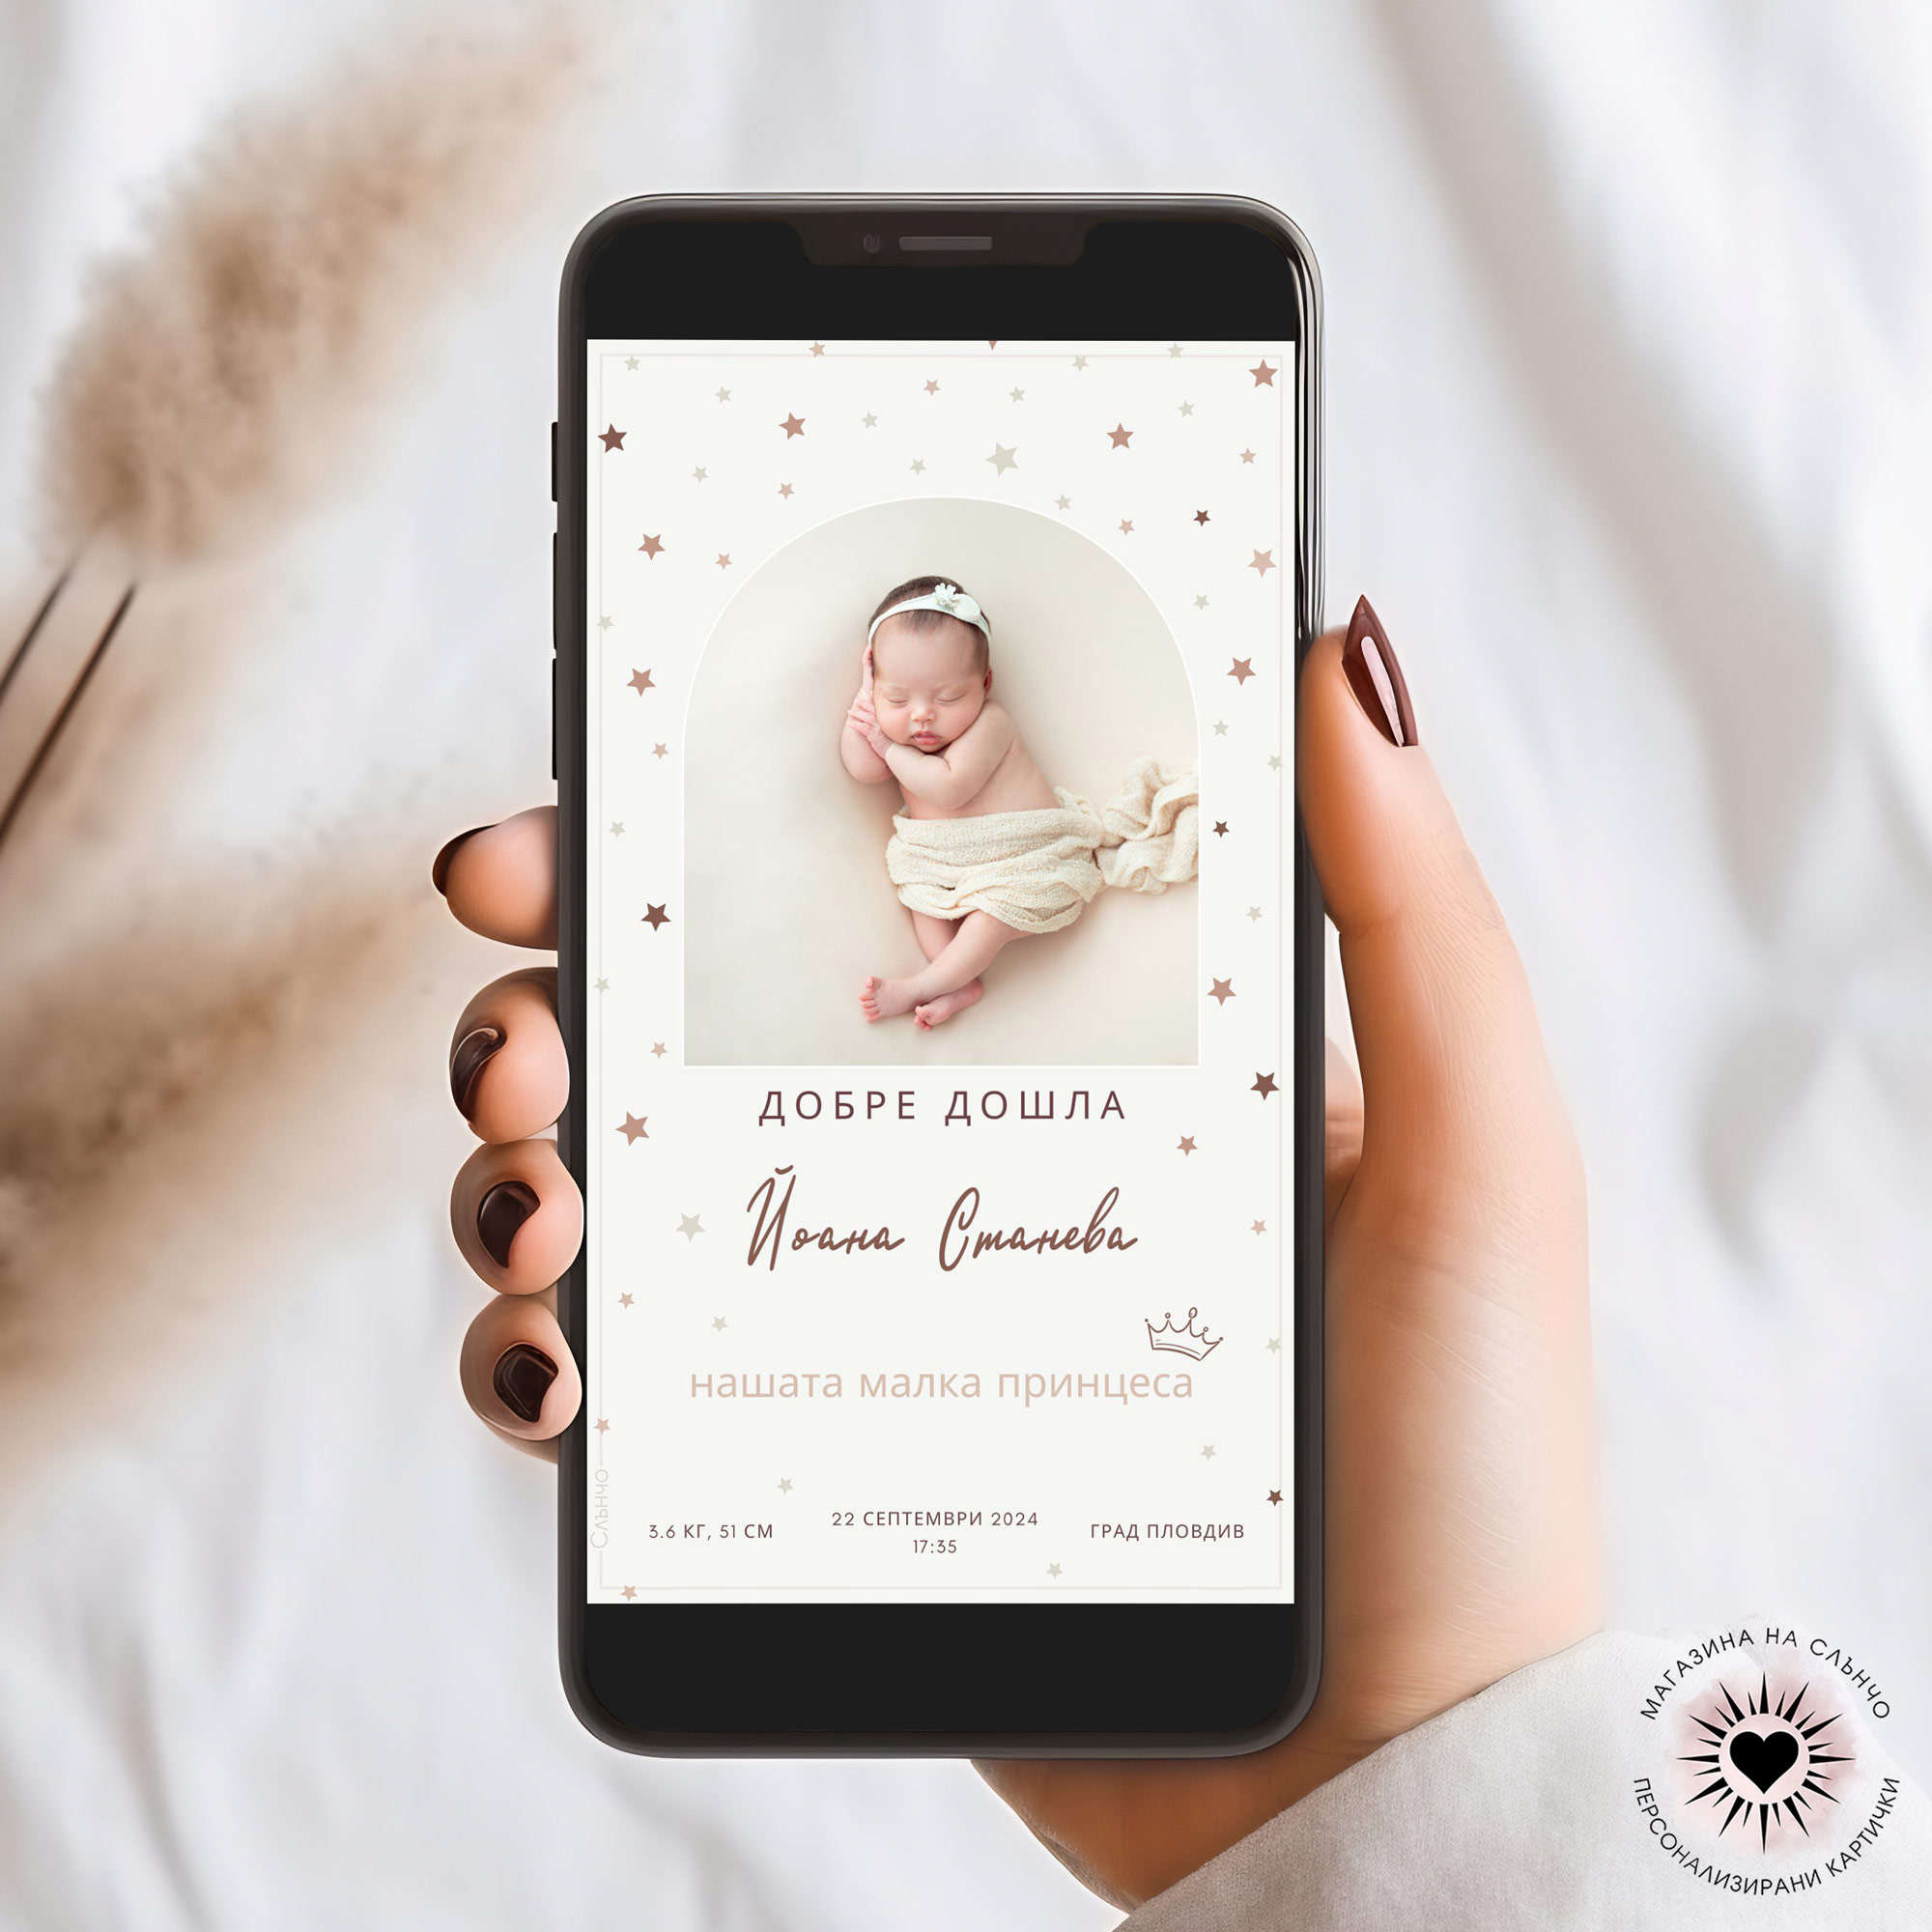 Добре дошло бебе, нашата малка принцеса  – Персонализирани картички за обявяване на бебе и бременност – Магазина на Слънчо